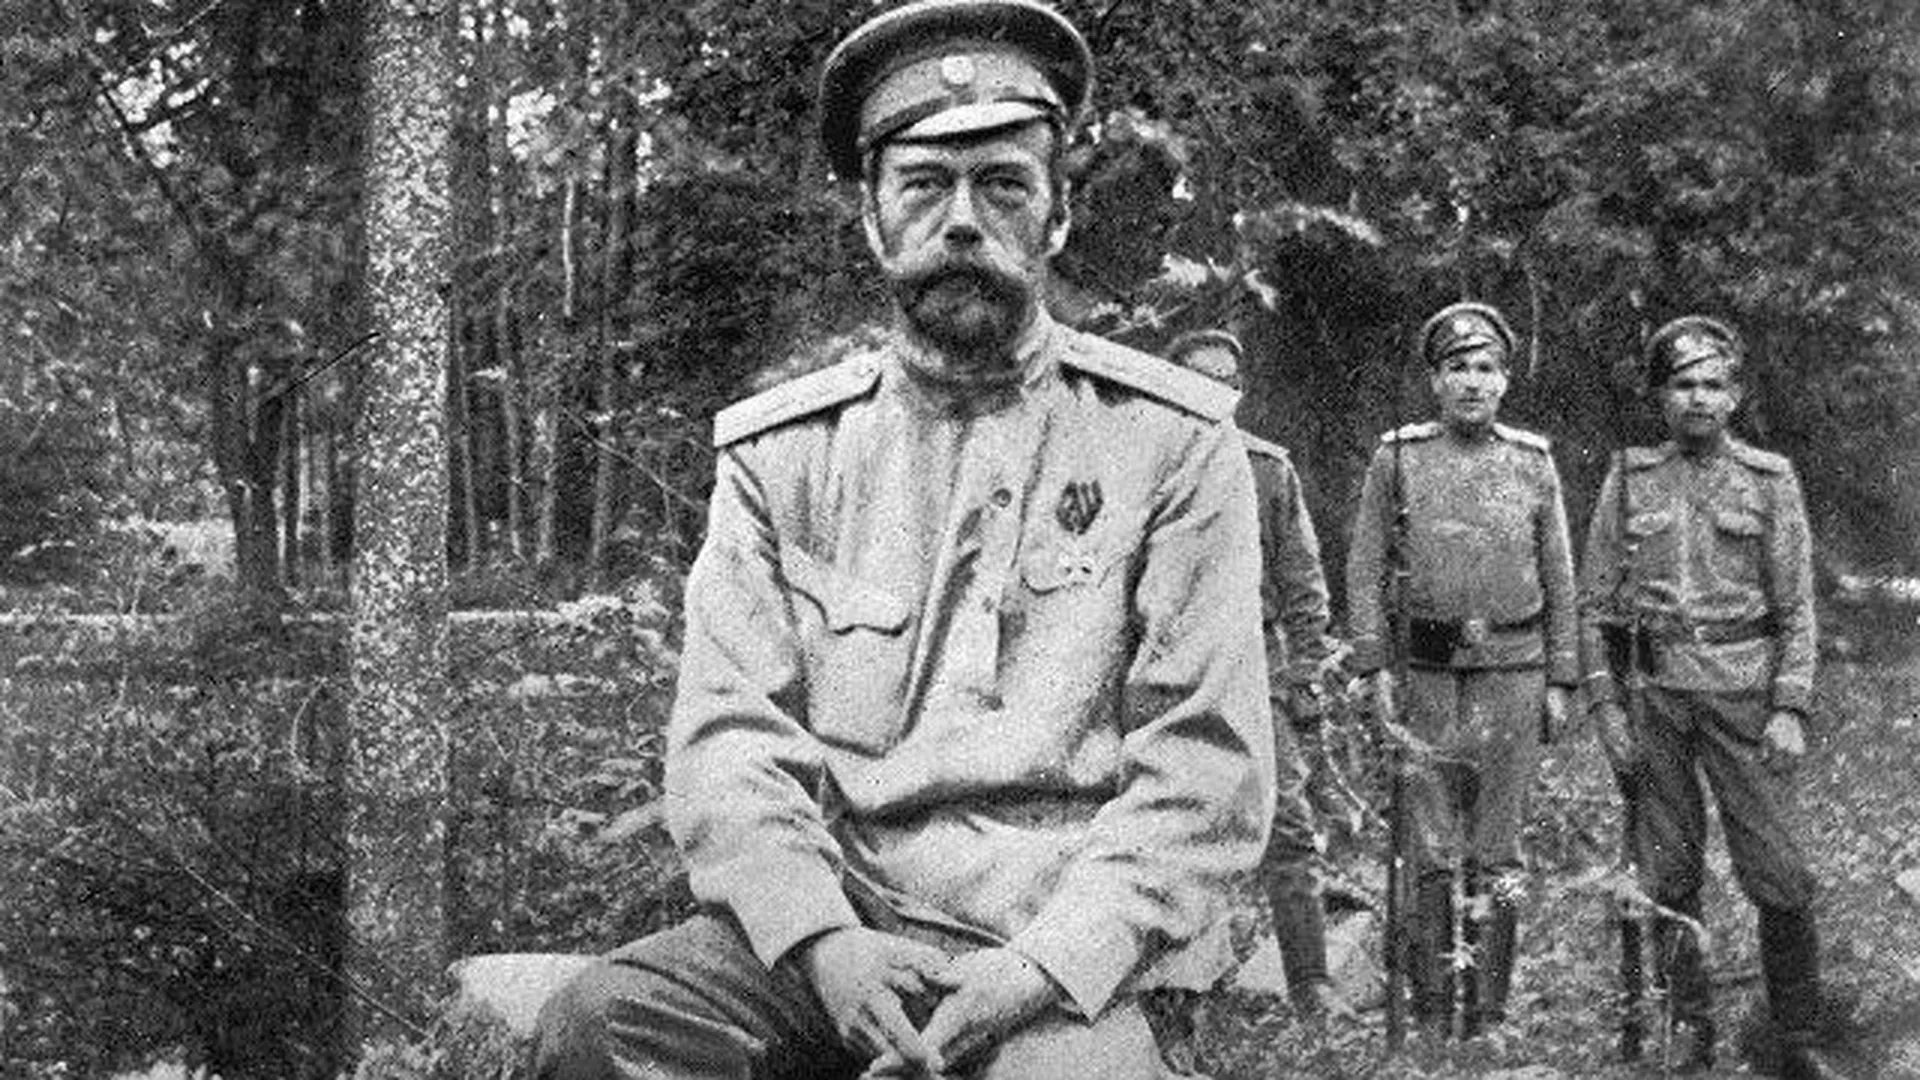 Личное мнение: не отрекаются, любя… 100 лет назад Николай II отрекся от престола